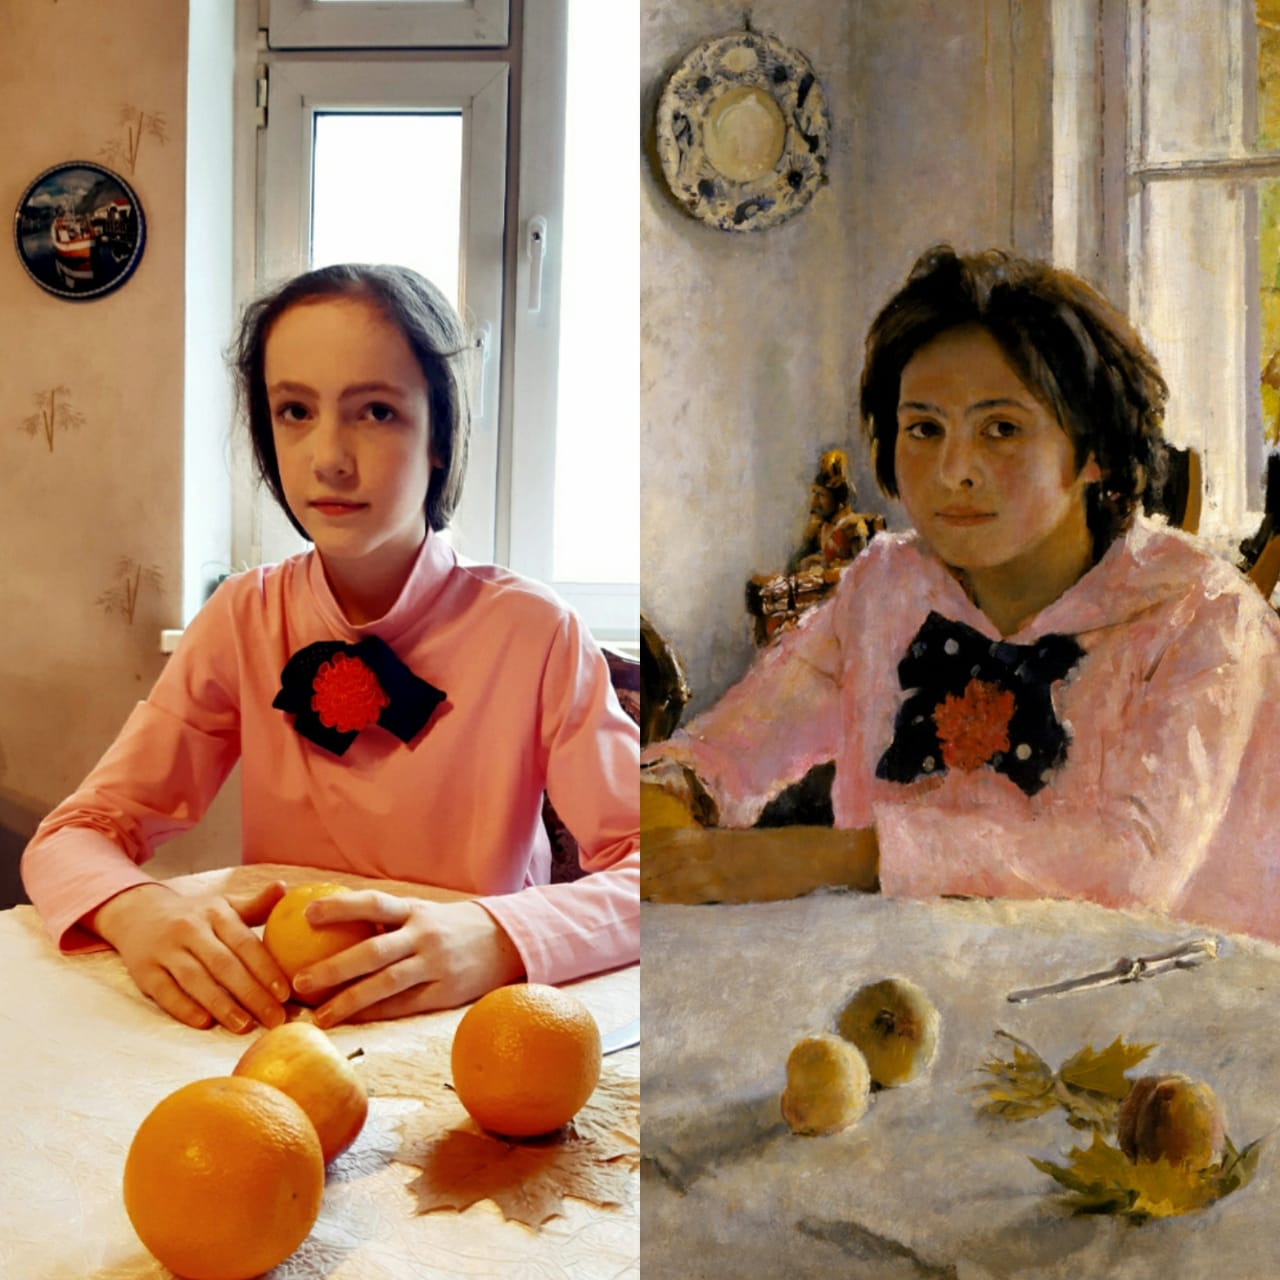 Девушка продавала персики. Девочка с персиками Серова. Девочка с персиками Серова 1887. Серов девочка с персиками в.а хорошее качество.